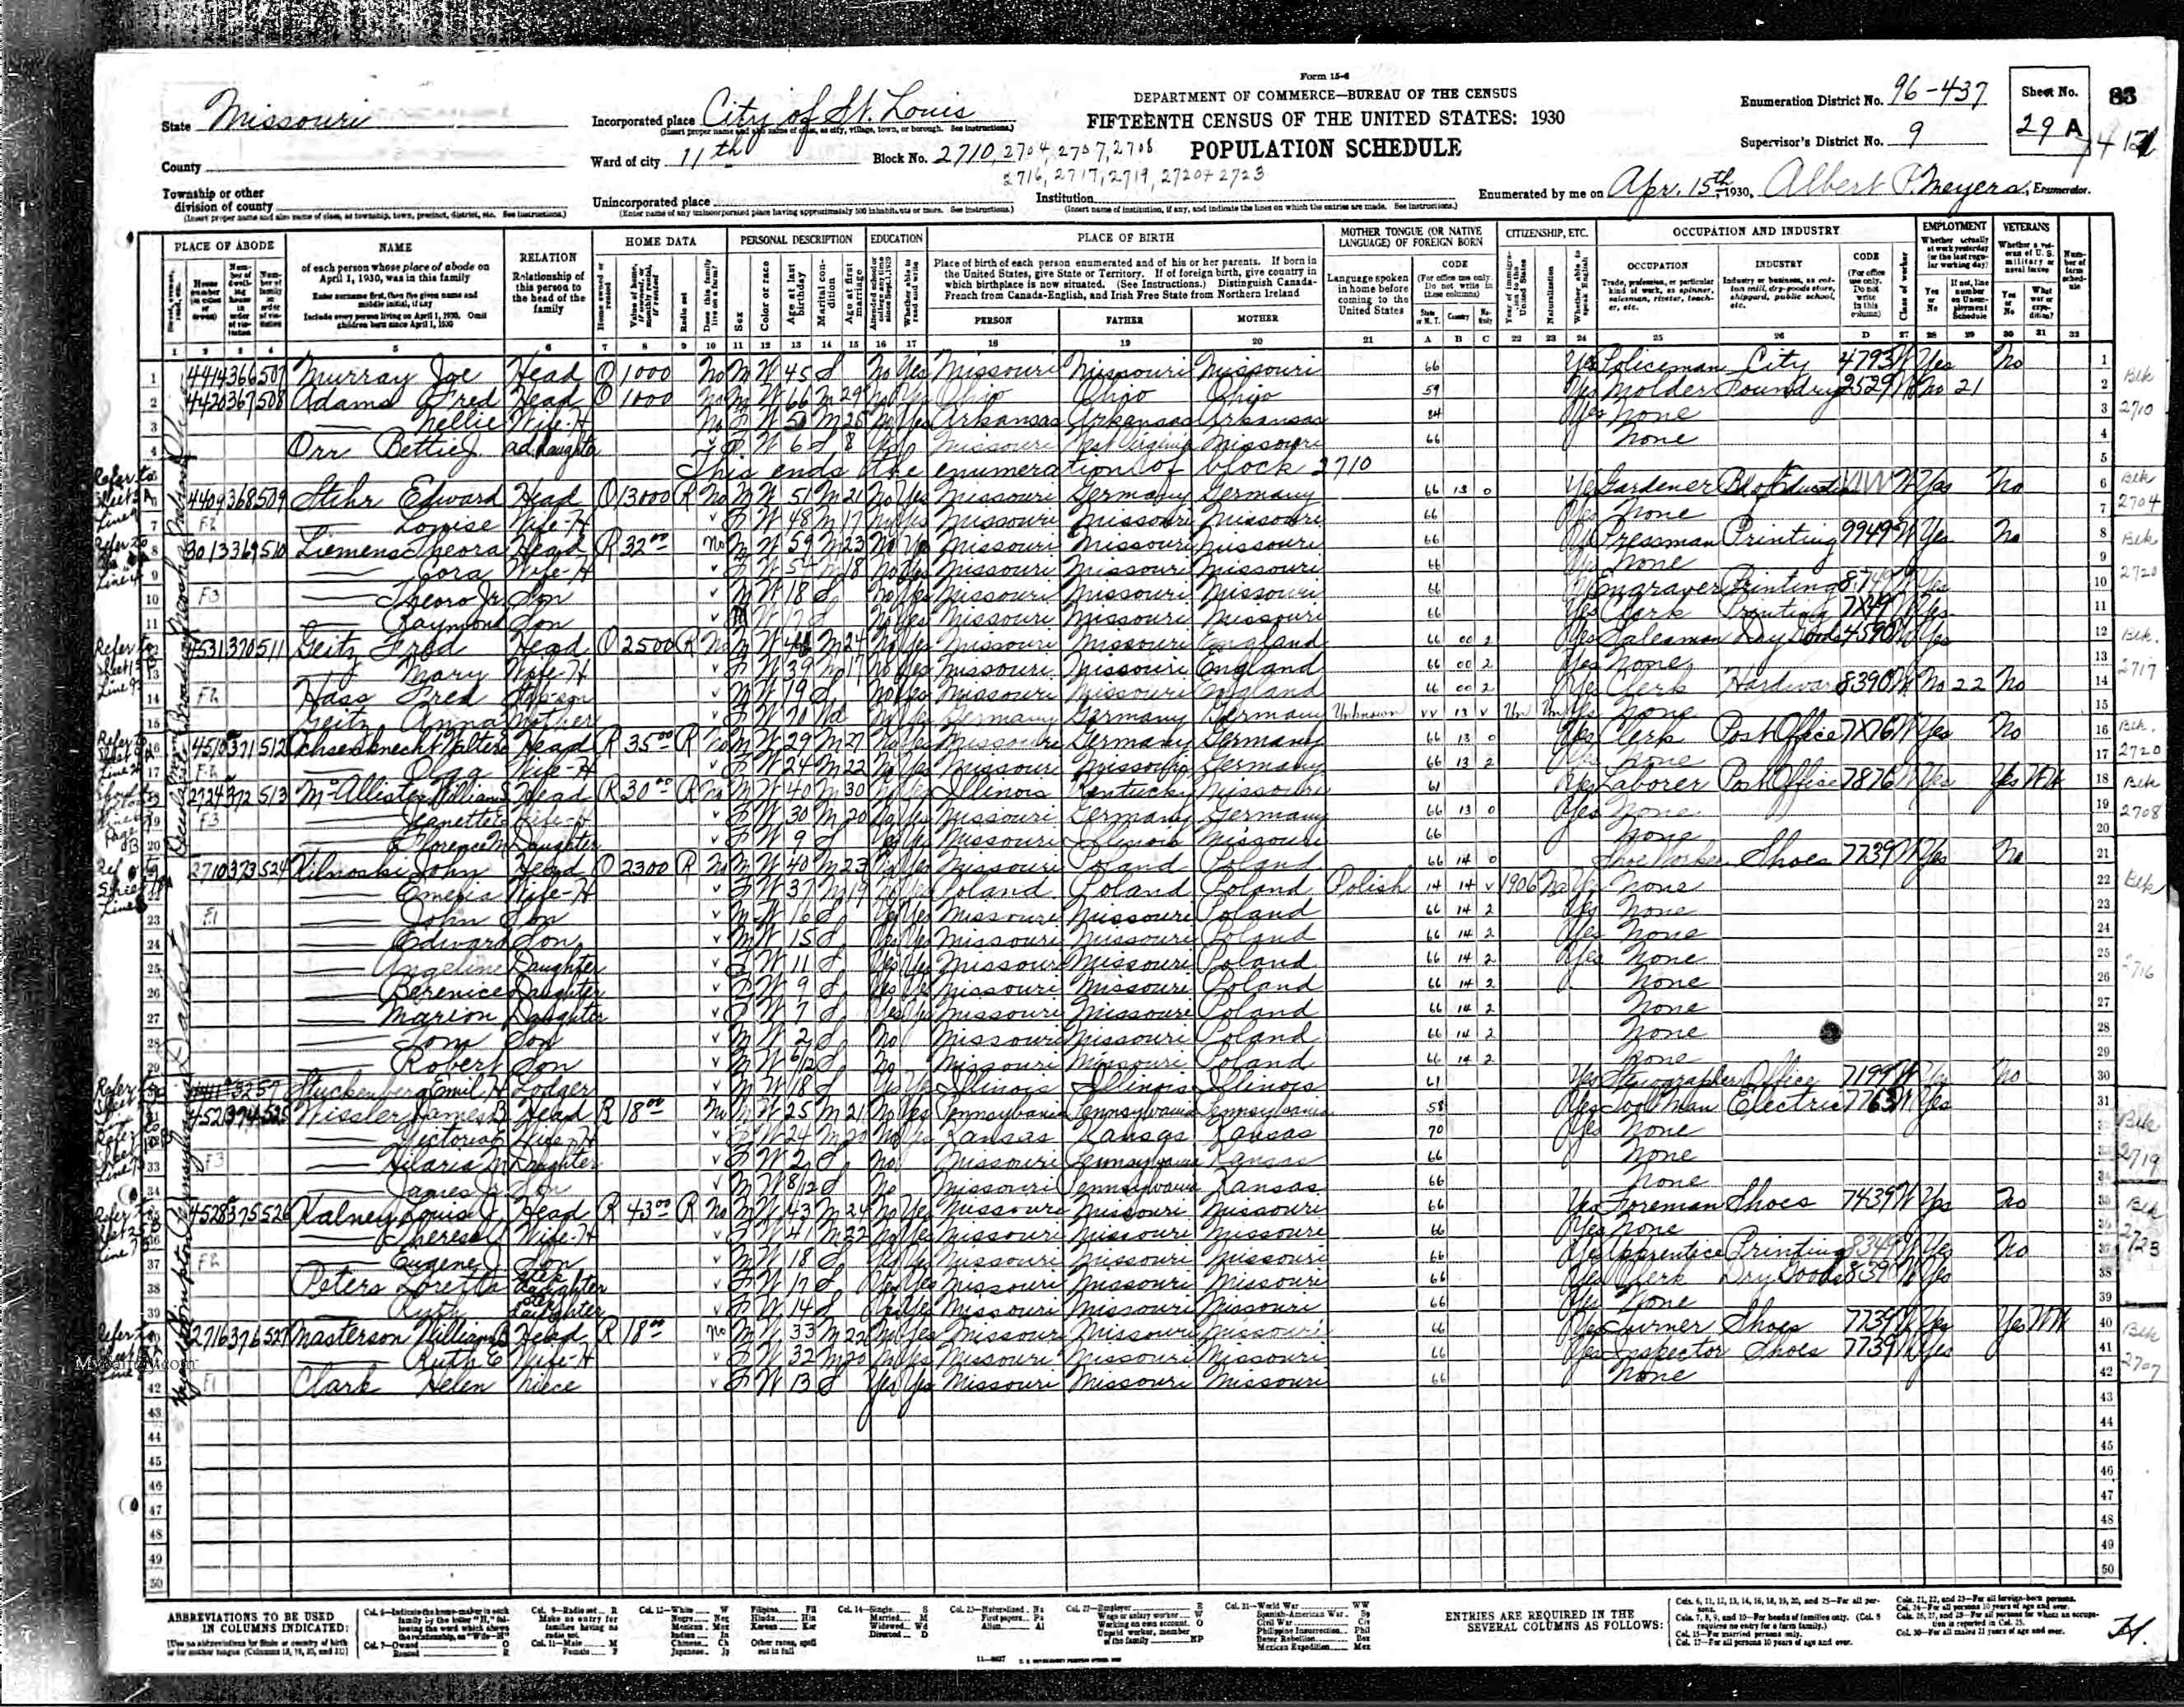 1930 St. Louis Census